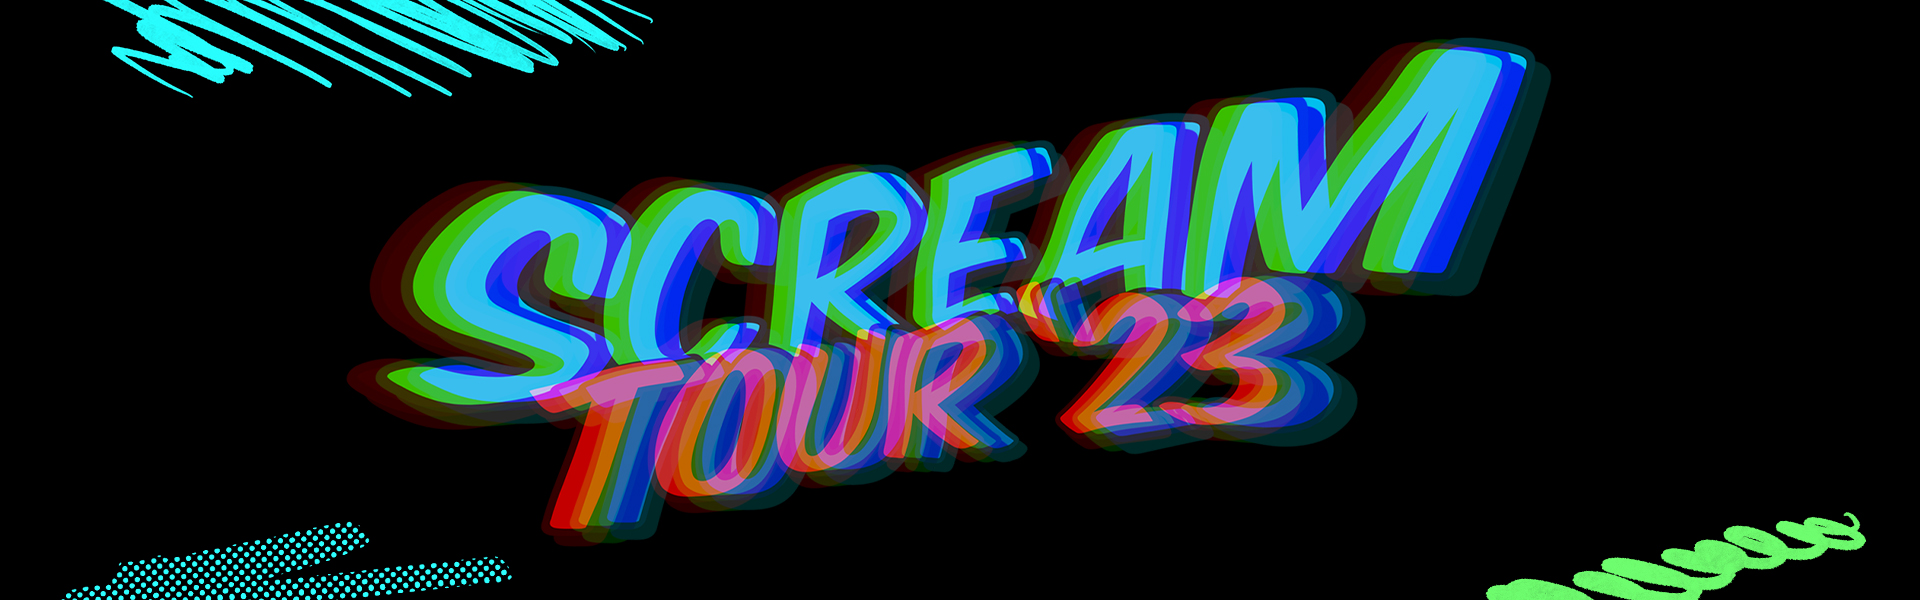 POSTPONED Scream Tour 2023 Next Up! NRG Park